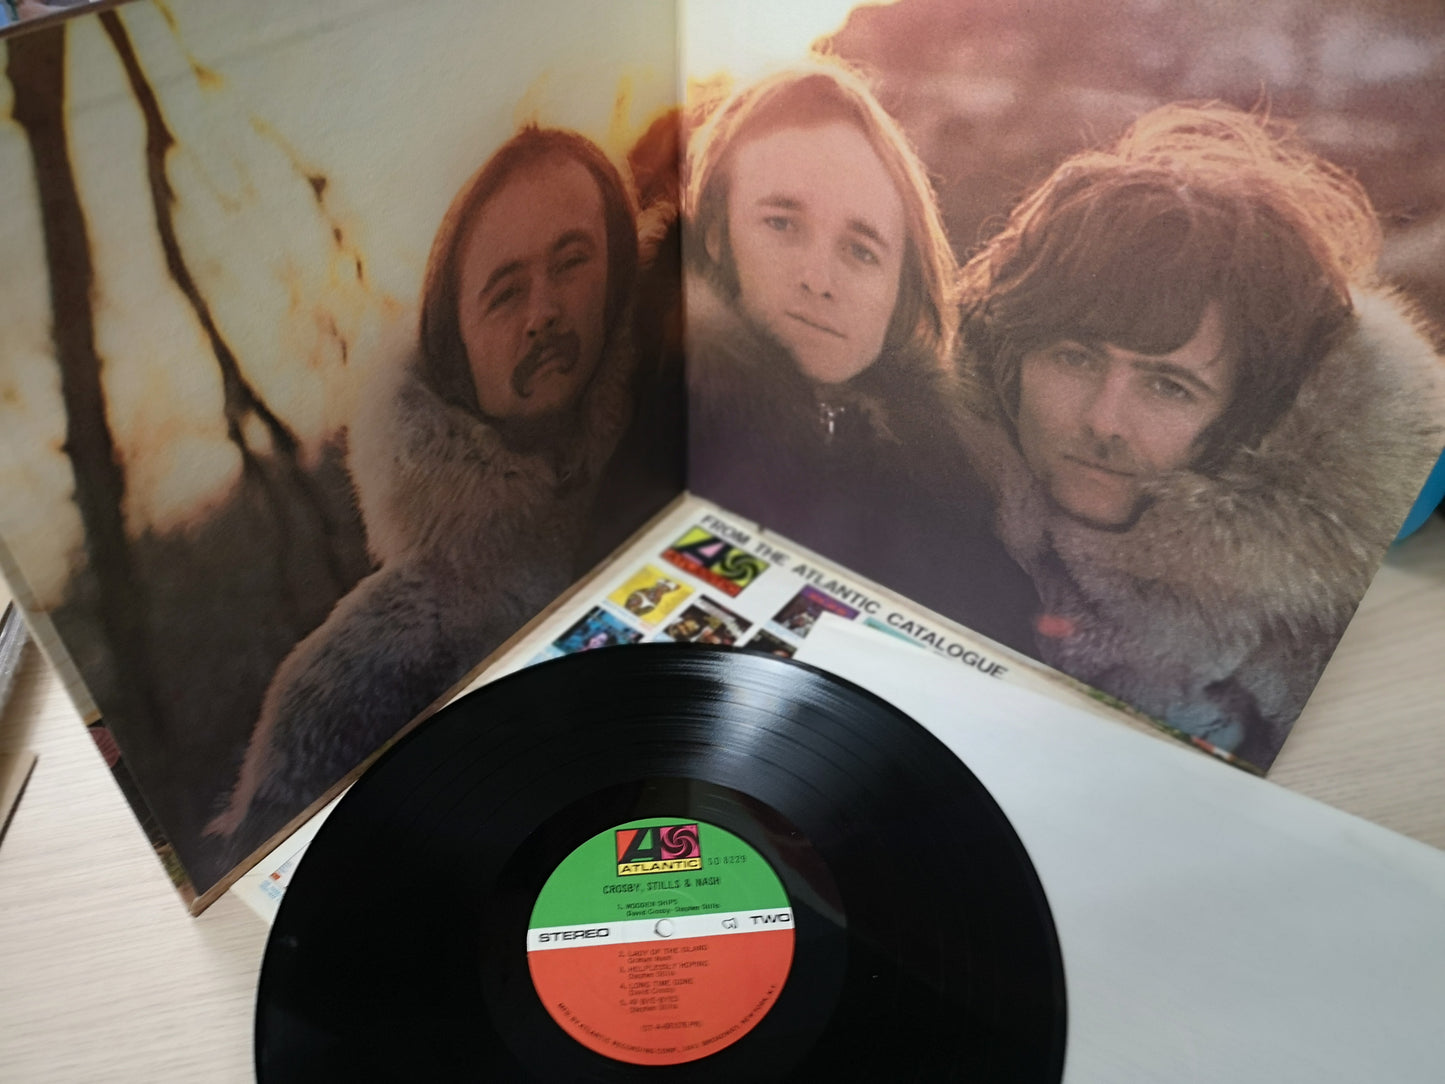 Crosby, Stills & Nash "S/T" Orig US 1969 M-/VG